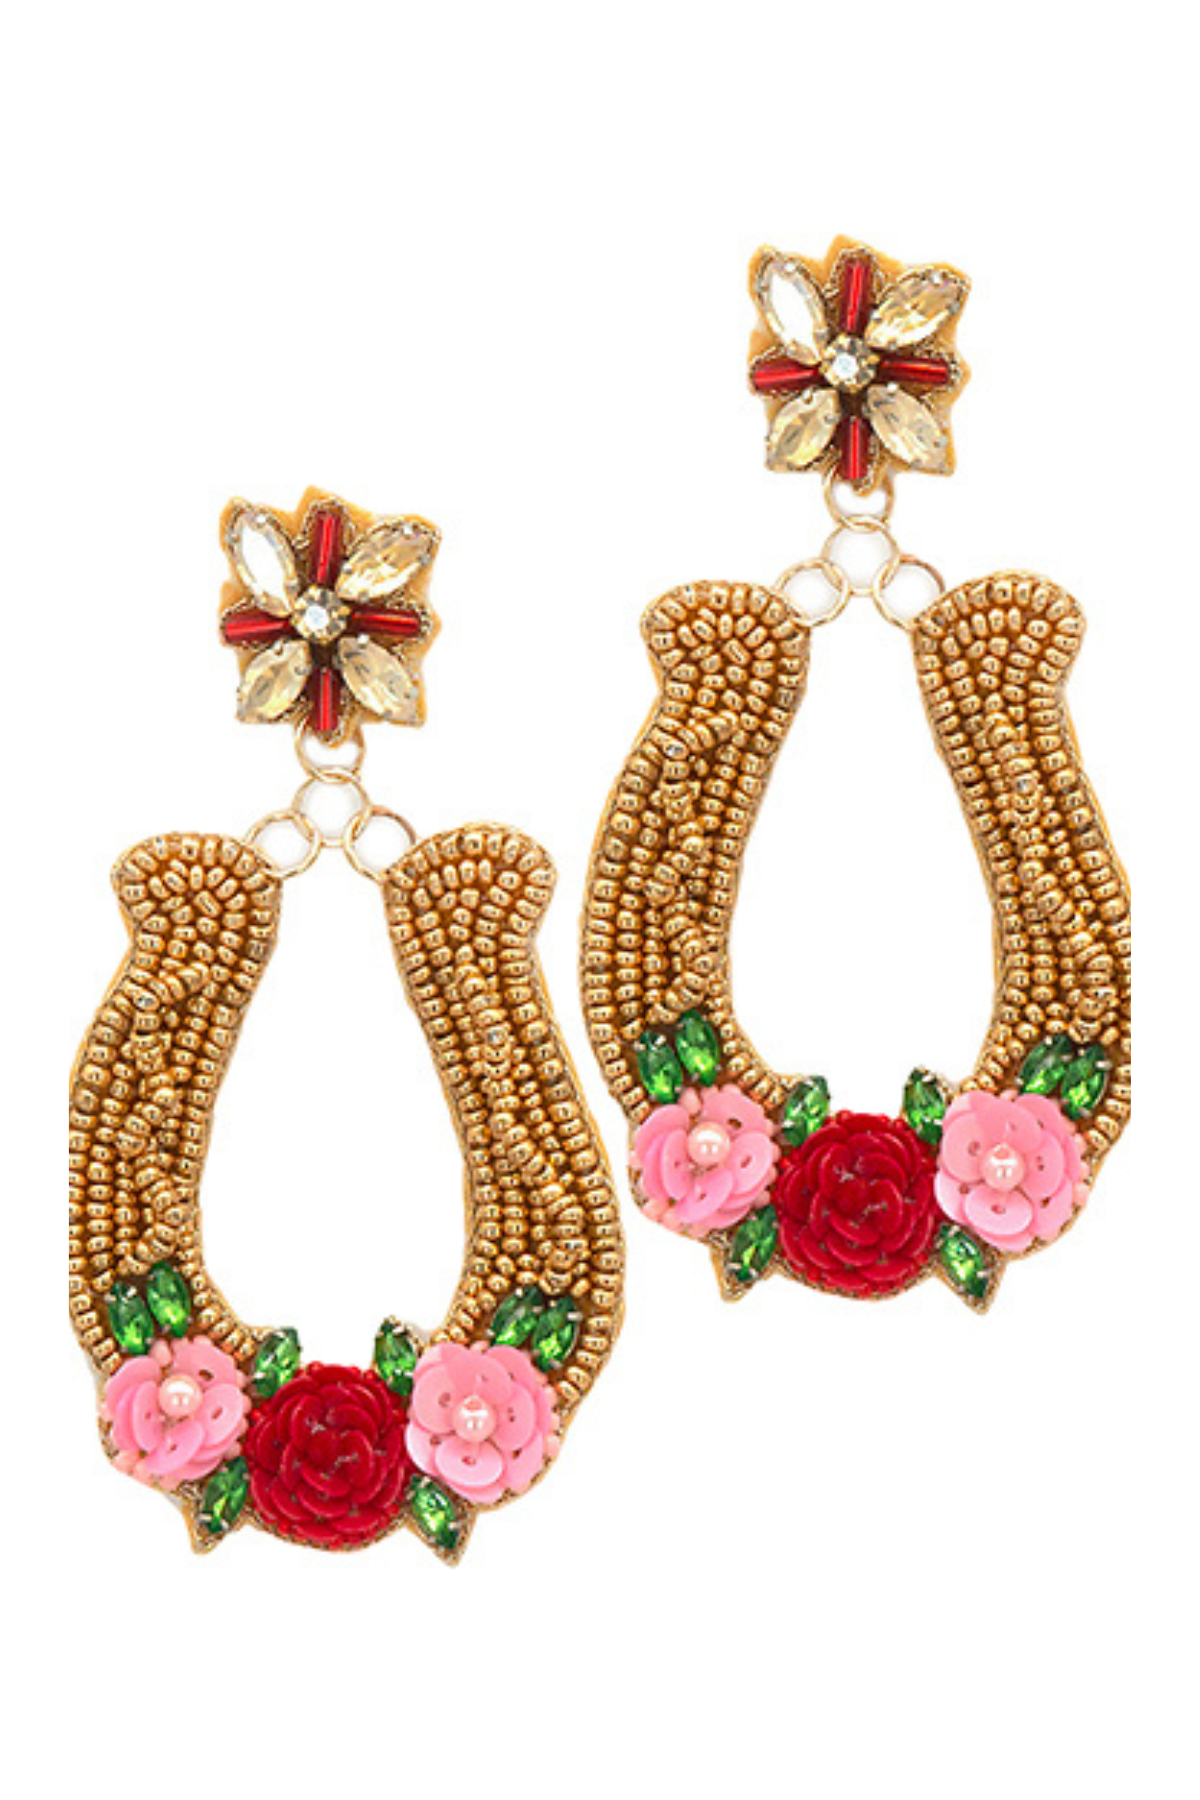 Gold Beaded Horseshoe and Flower Earrings